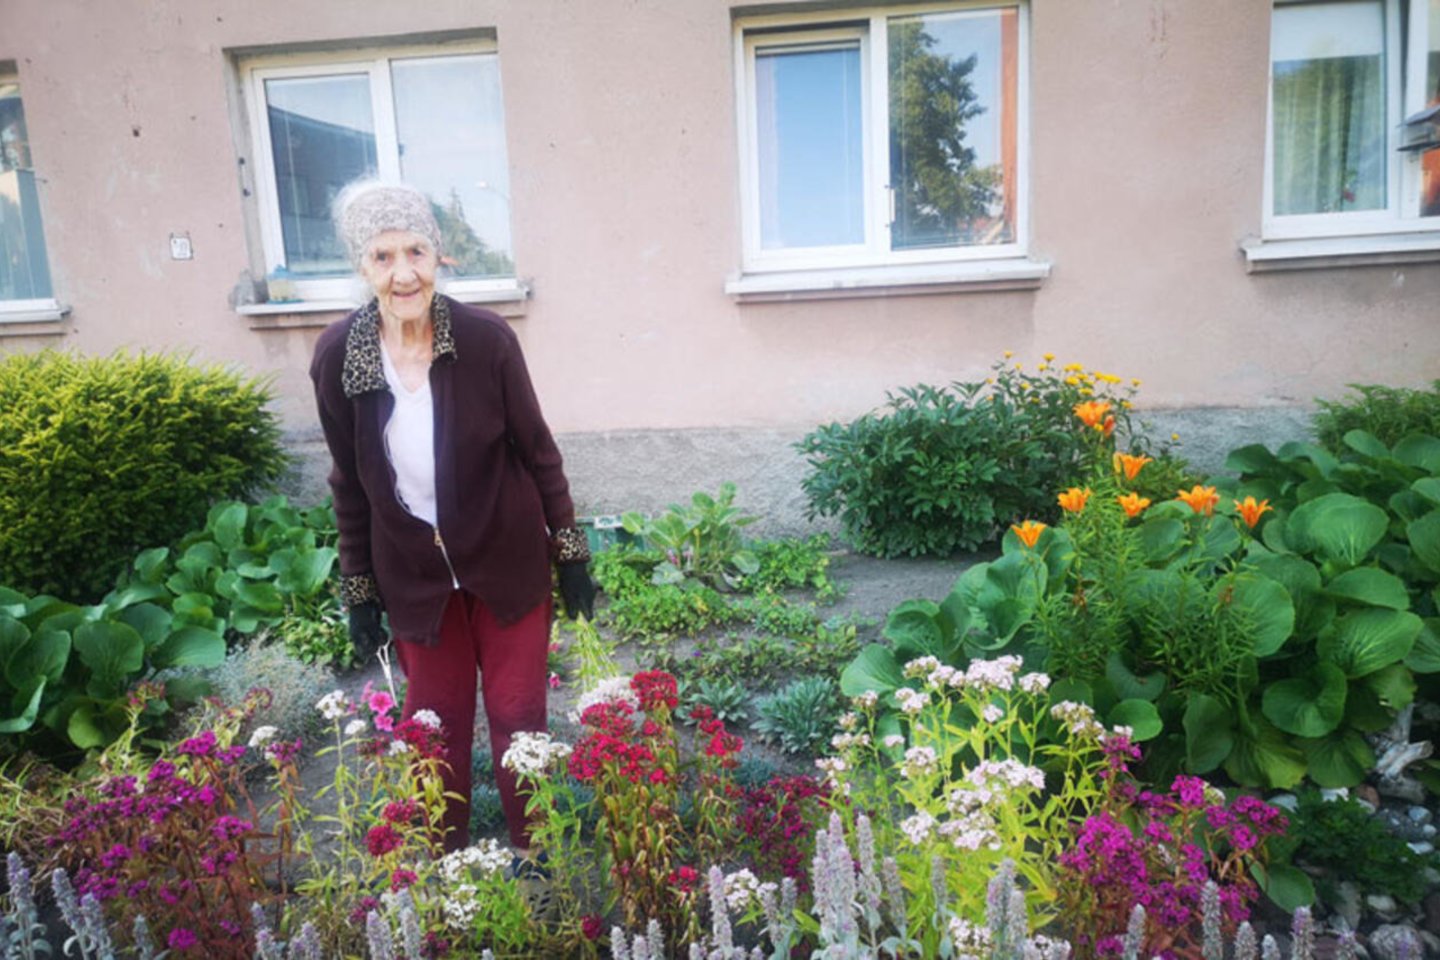 Klaipėdiškei Bronei Vilimienei gėlės – didžiausias džiaugsmas. Joms sveikatos ir energijos senolė nestokoja. <br>Jurgos Petronytės nuotr.